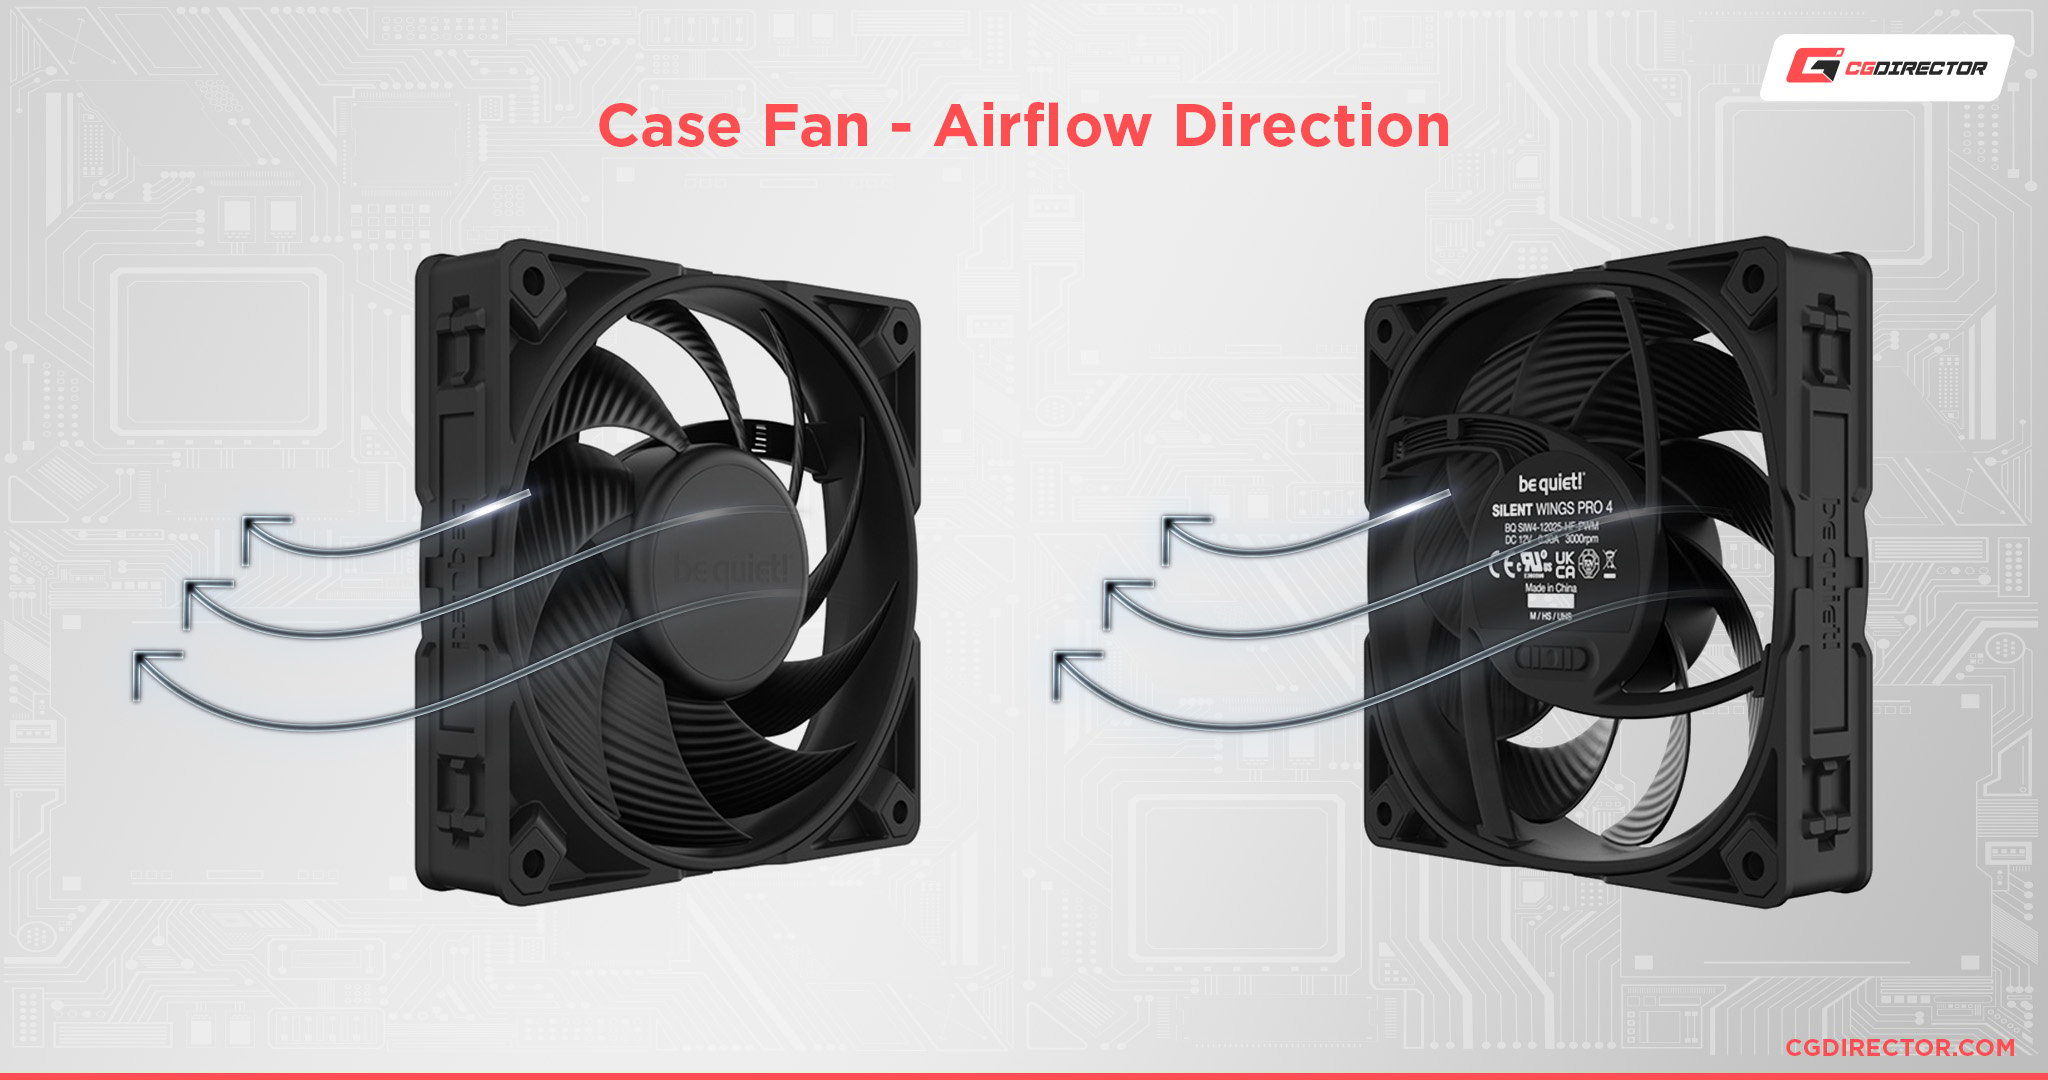 Case Fan - Airflow Direction